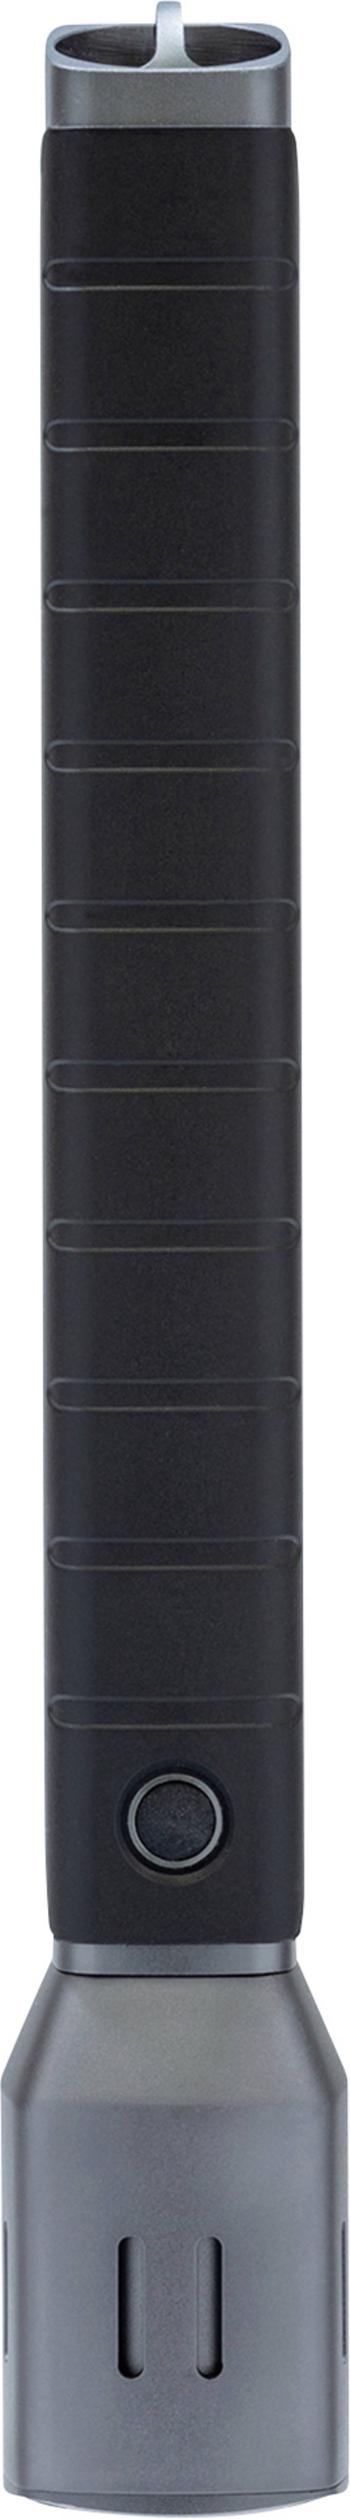 ABUS TL-530 LED  vreckové svietidlo (baterka)  na batérie 1000 lm 5 h 455 g